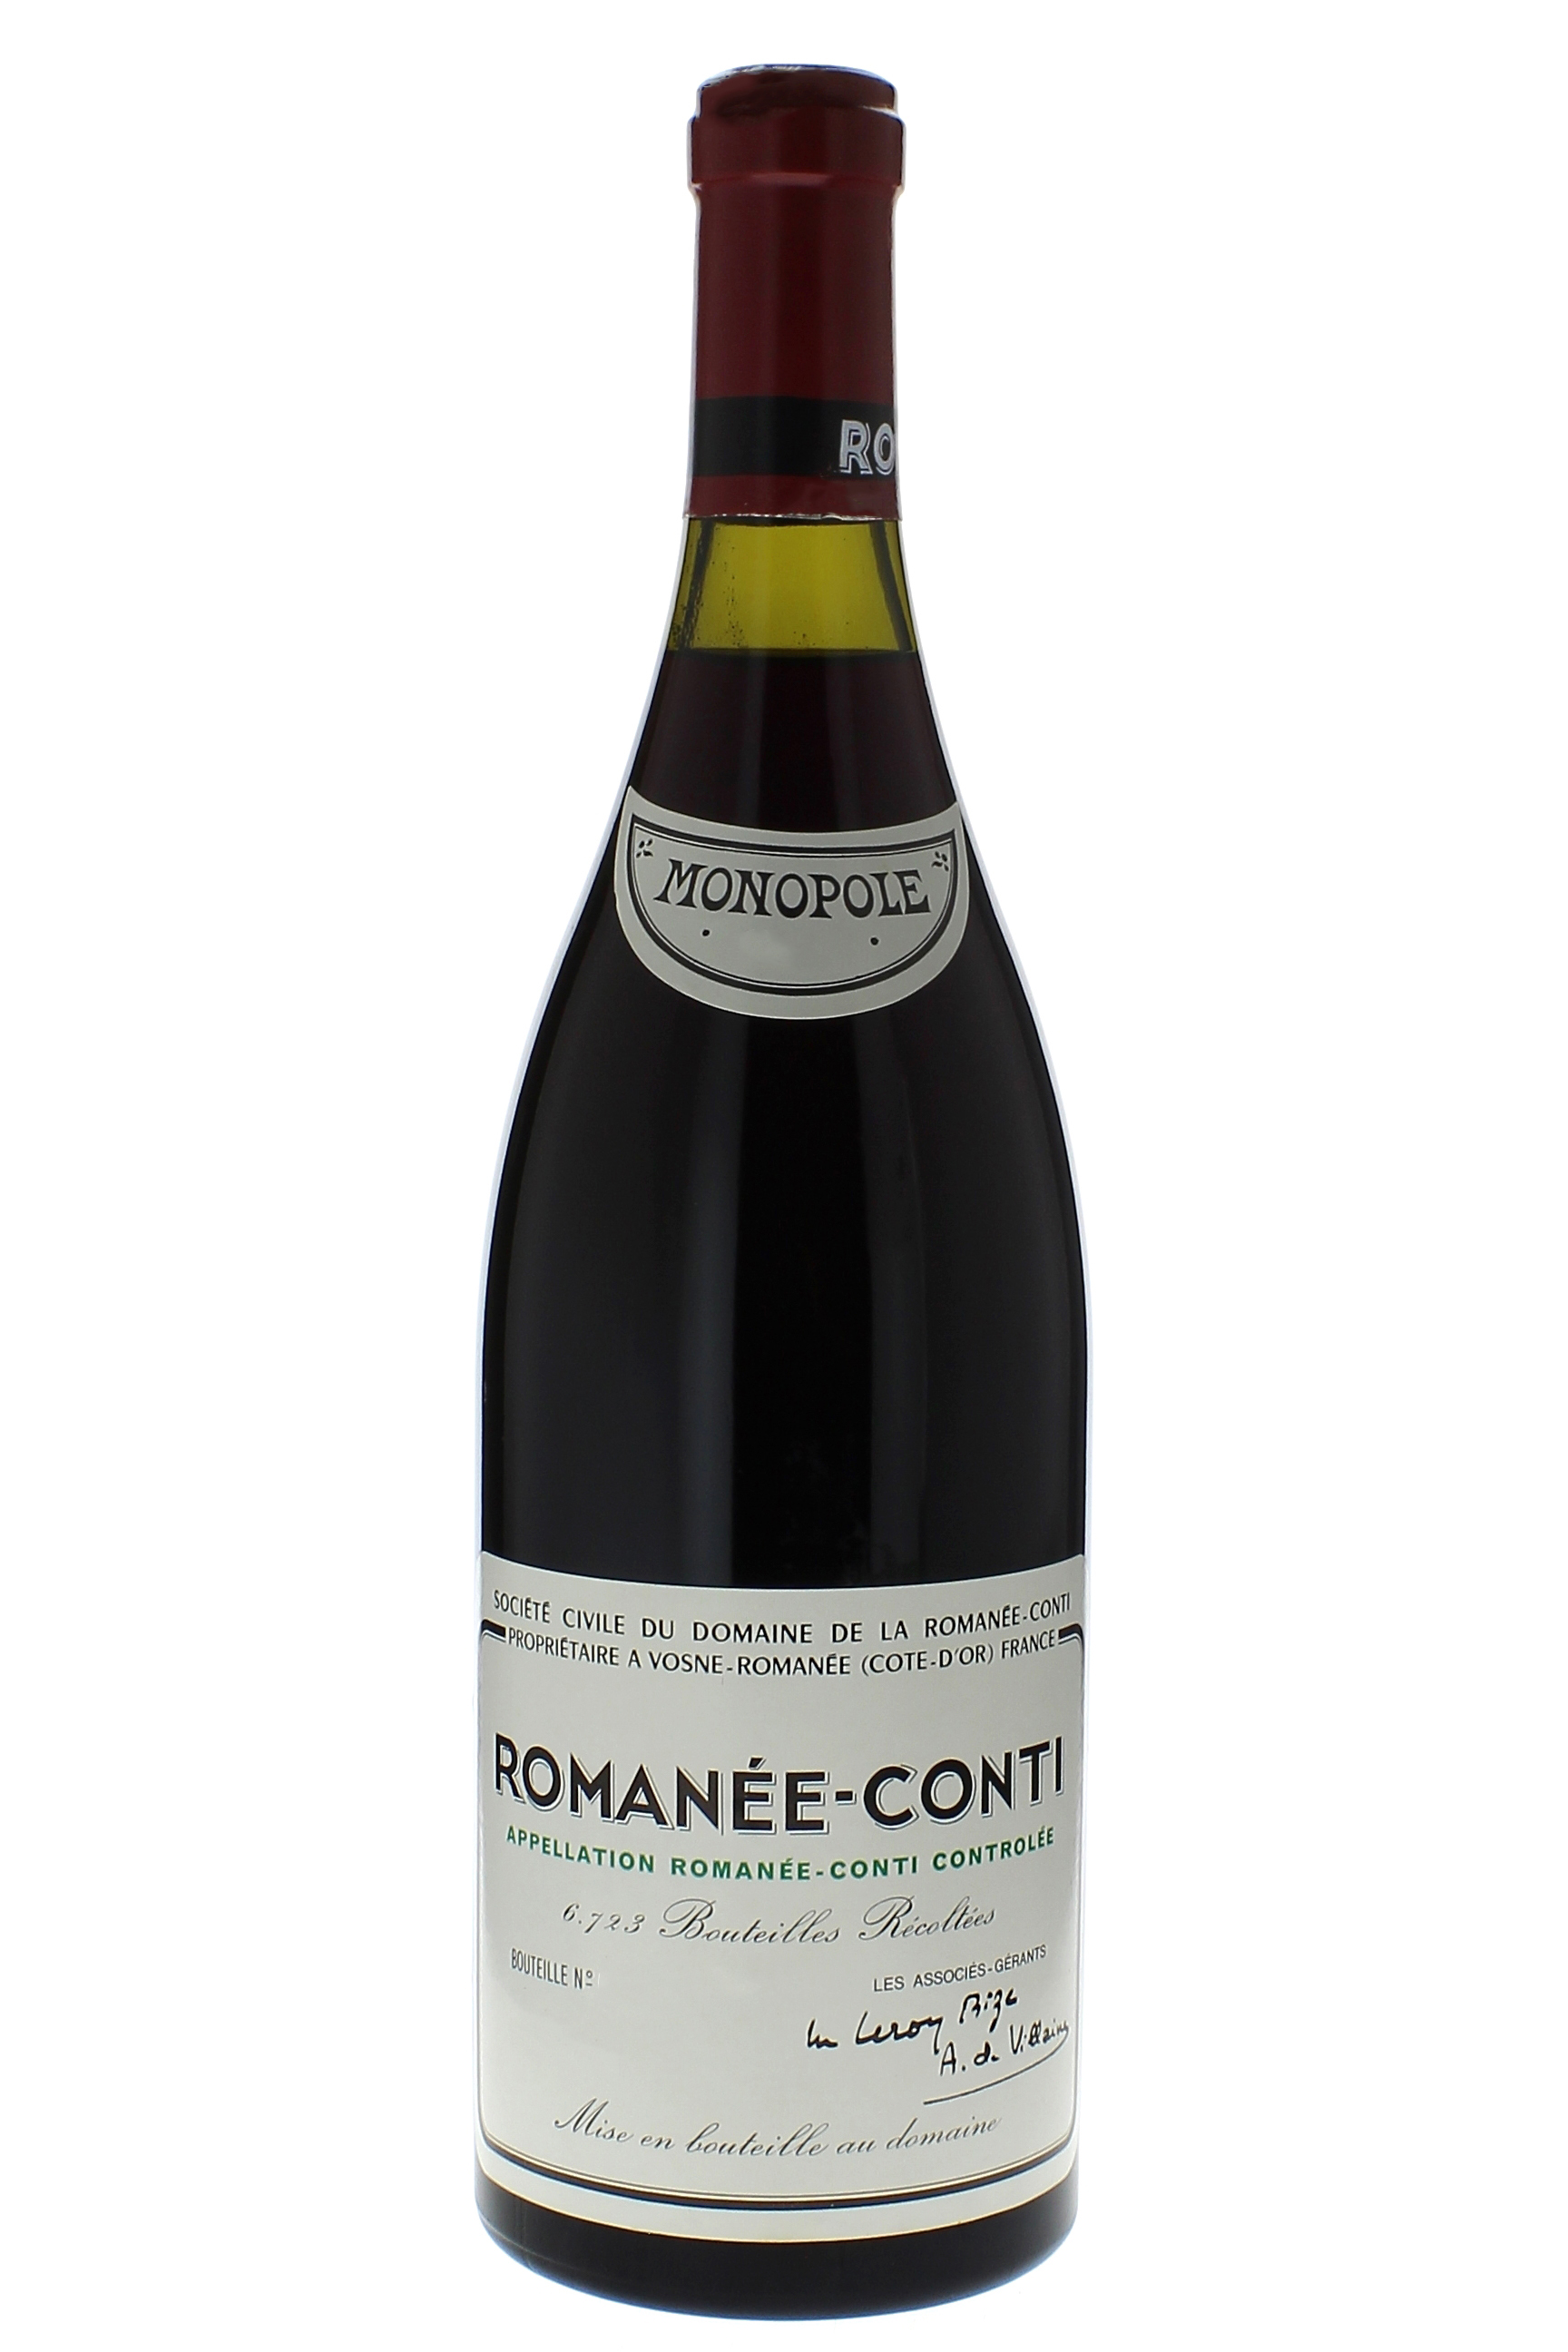 Romane conti grand cru 2014 Domaine ROMANEE CONTI, Bourgogne rouge